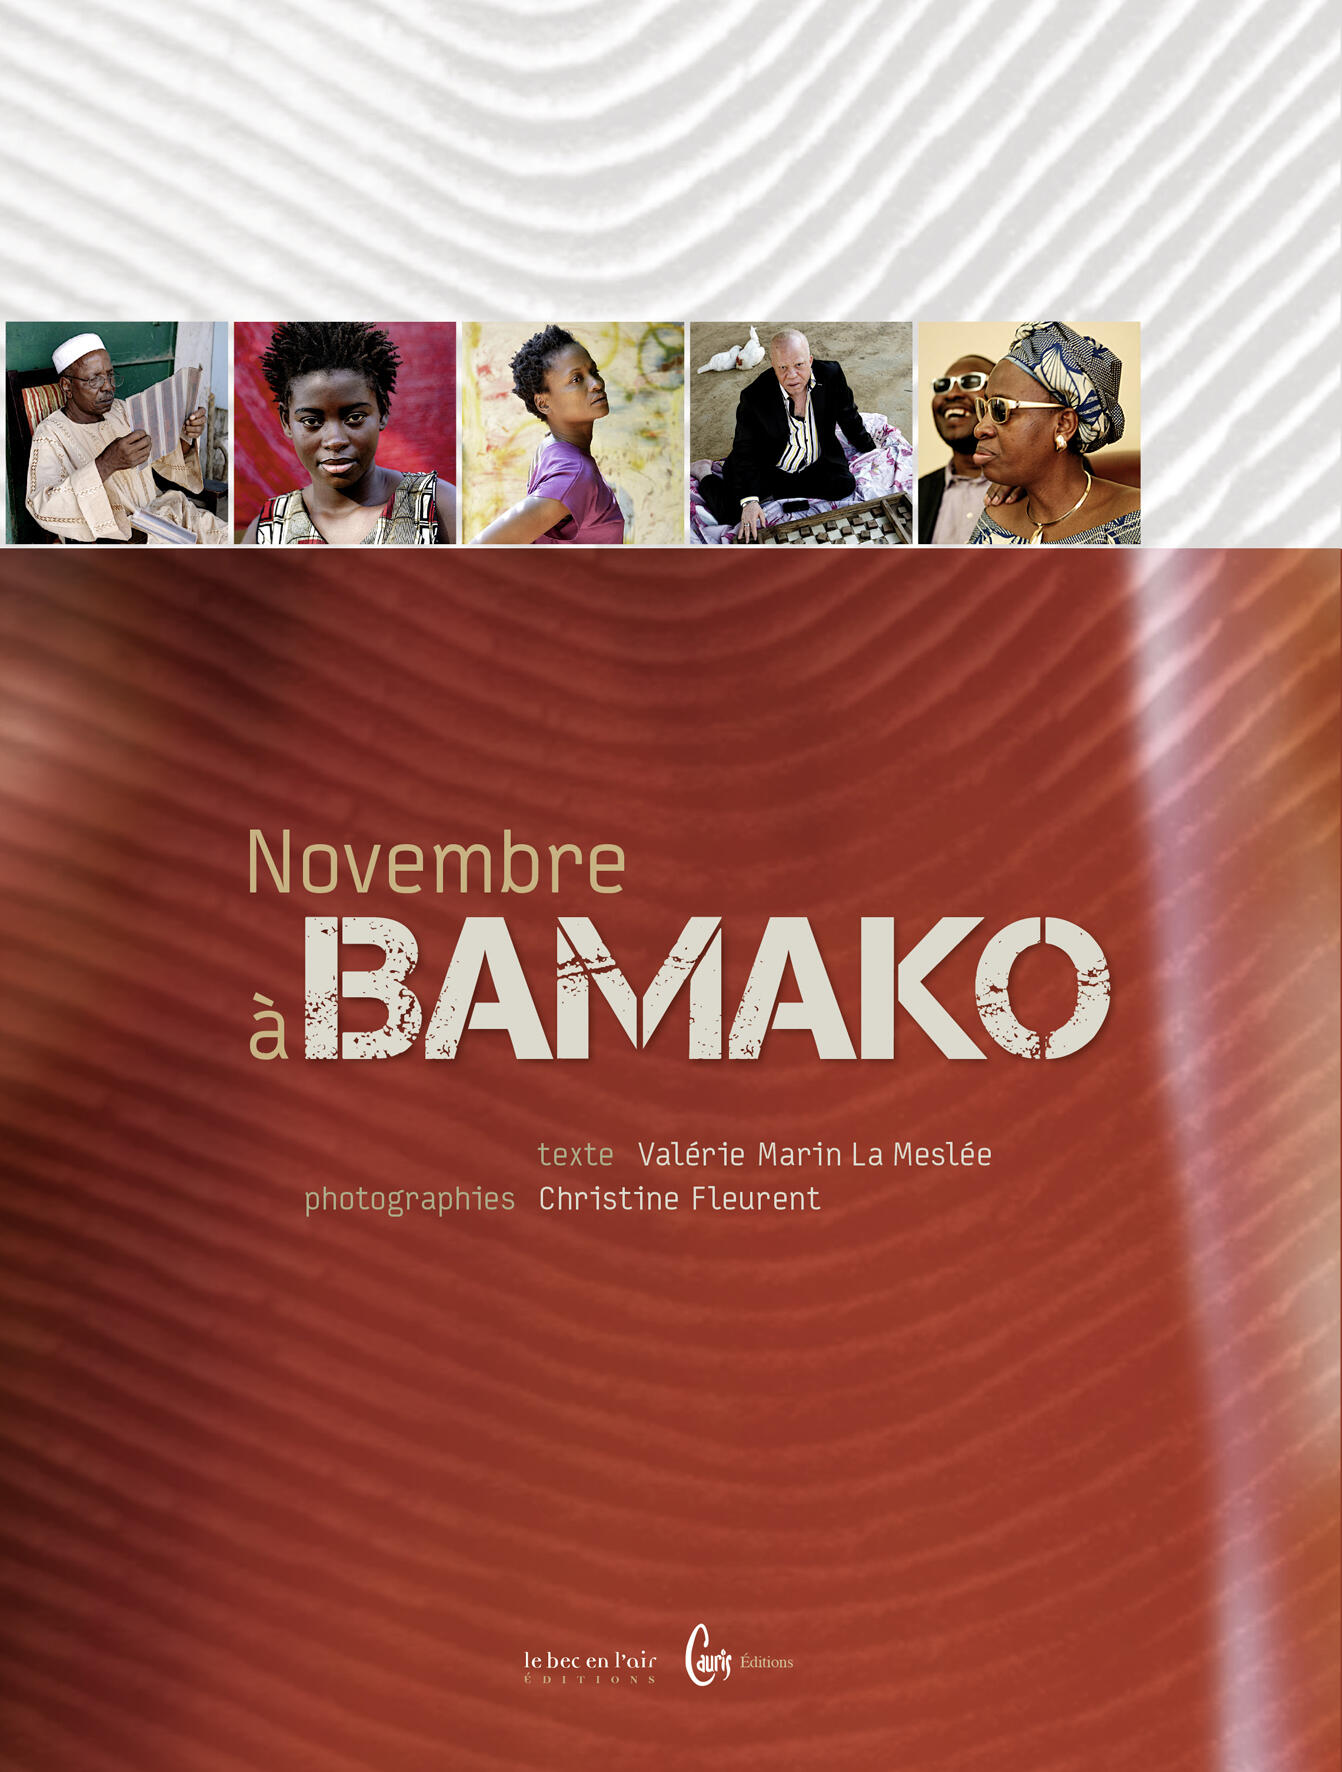 November in Bamako